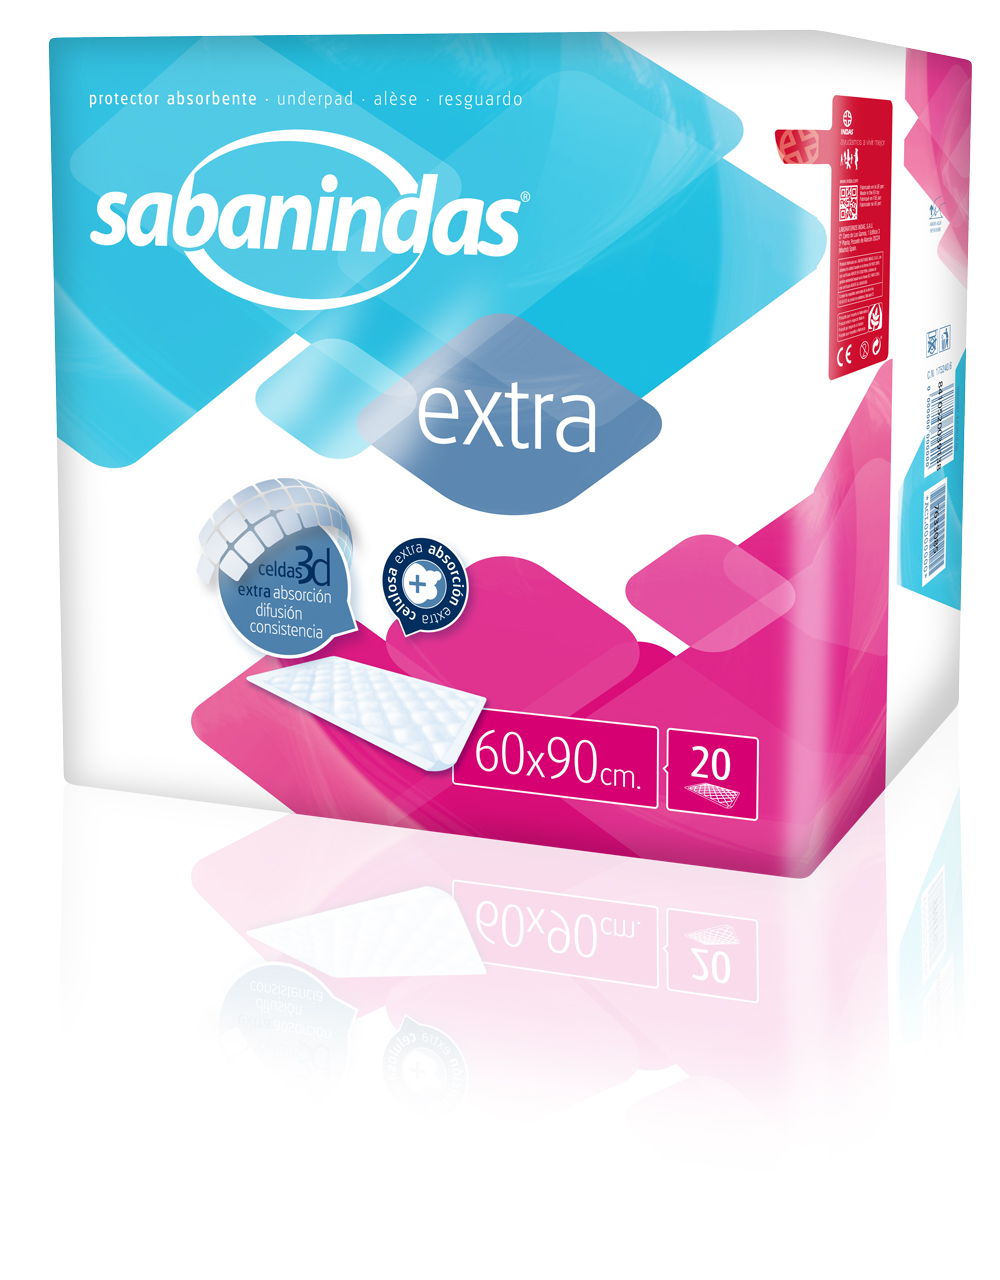 SABANINDAS - Extra - Inkontinenzunterlagen 60 x 90cm (6x20 Stück)